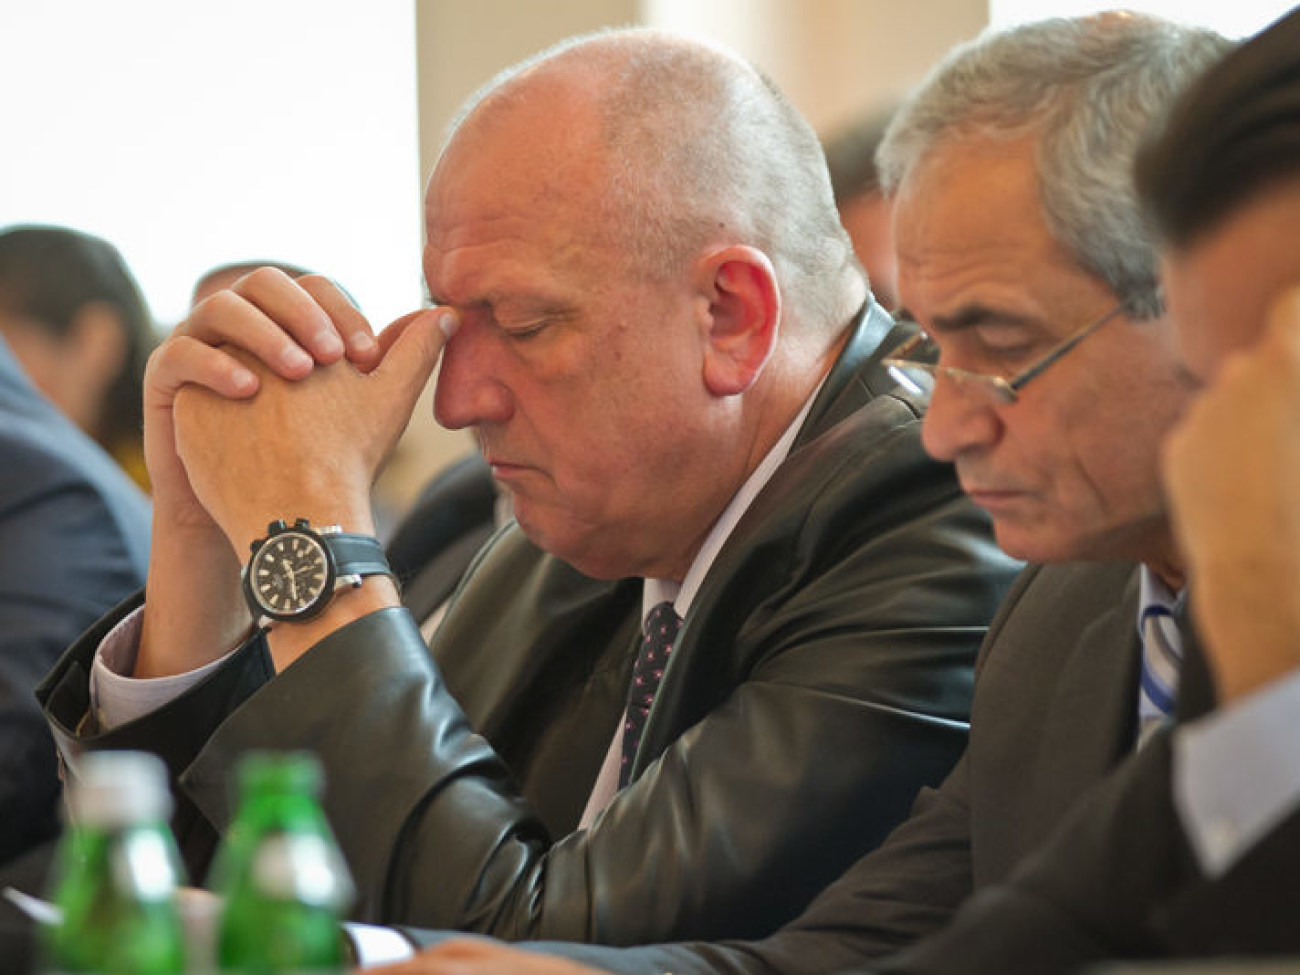 Съезд Федерации работодателей горняков Украины (ФРГУ), 9 октября 2012г.